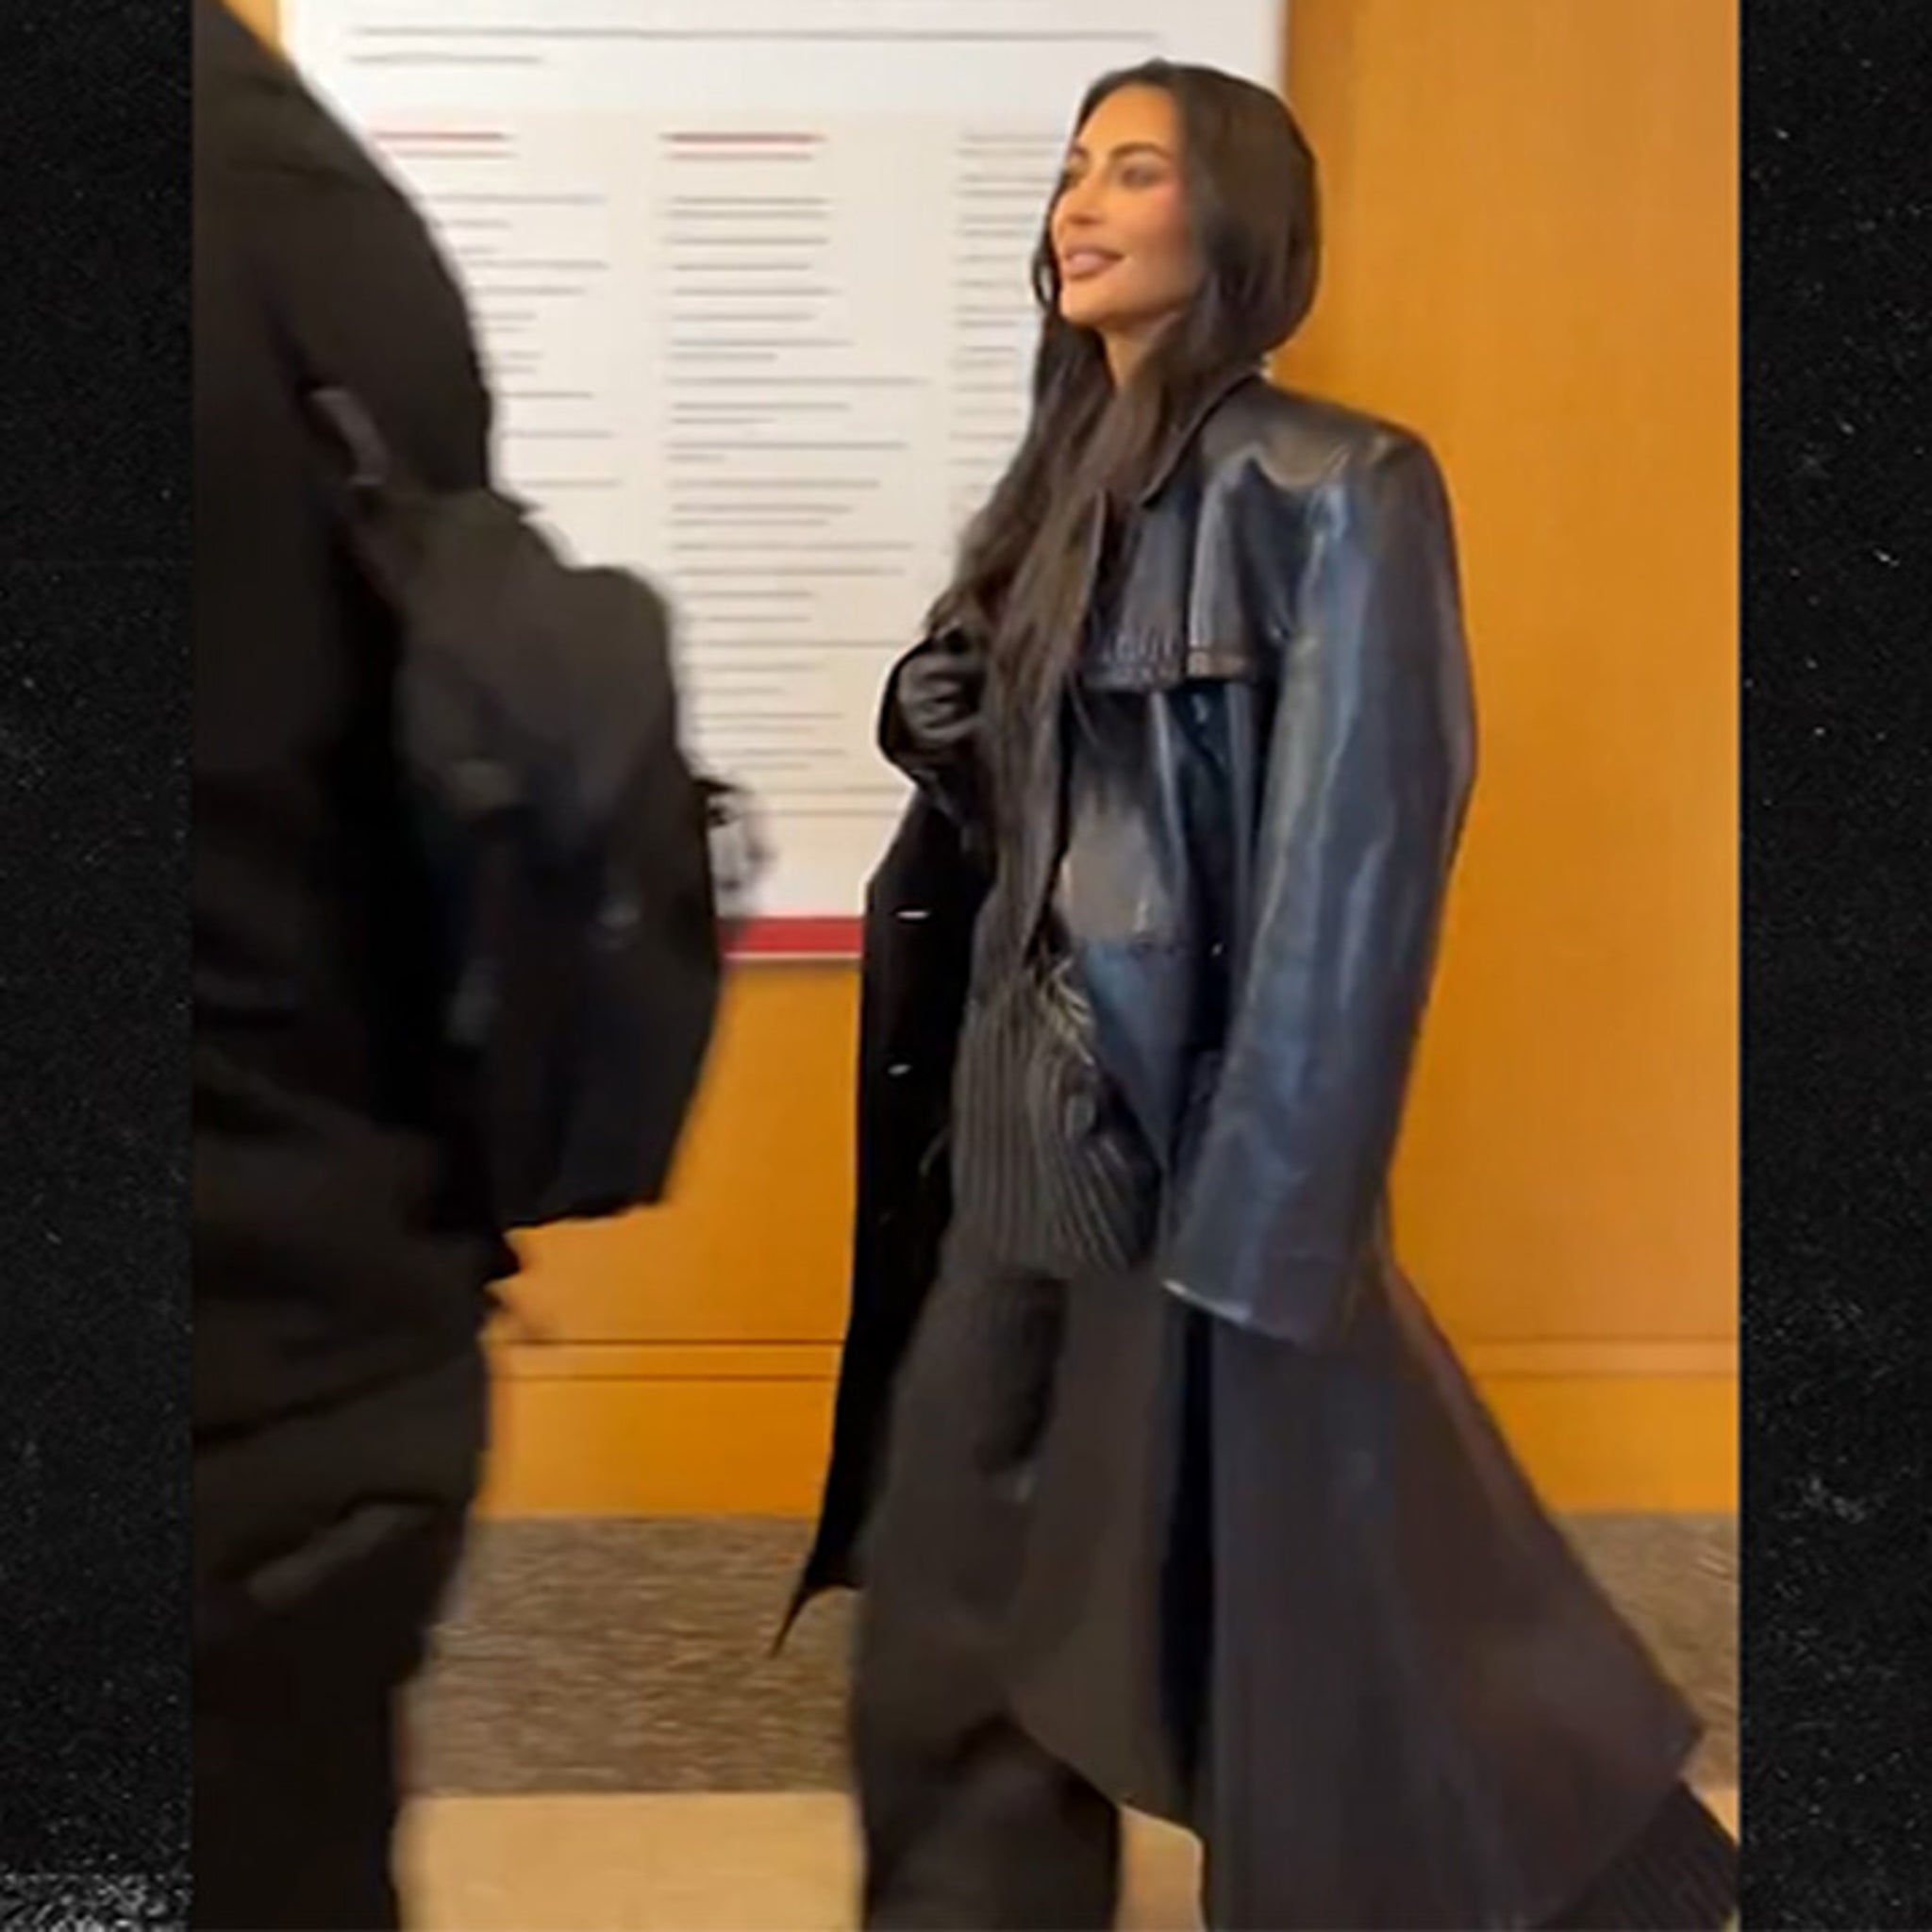 Kim Kardashian Speaking at Harvard Draws Mixed (But…